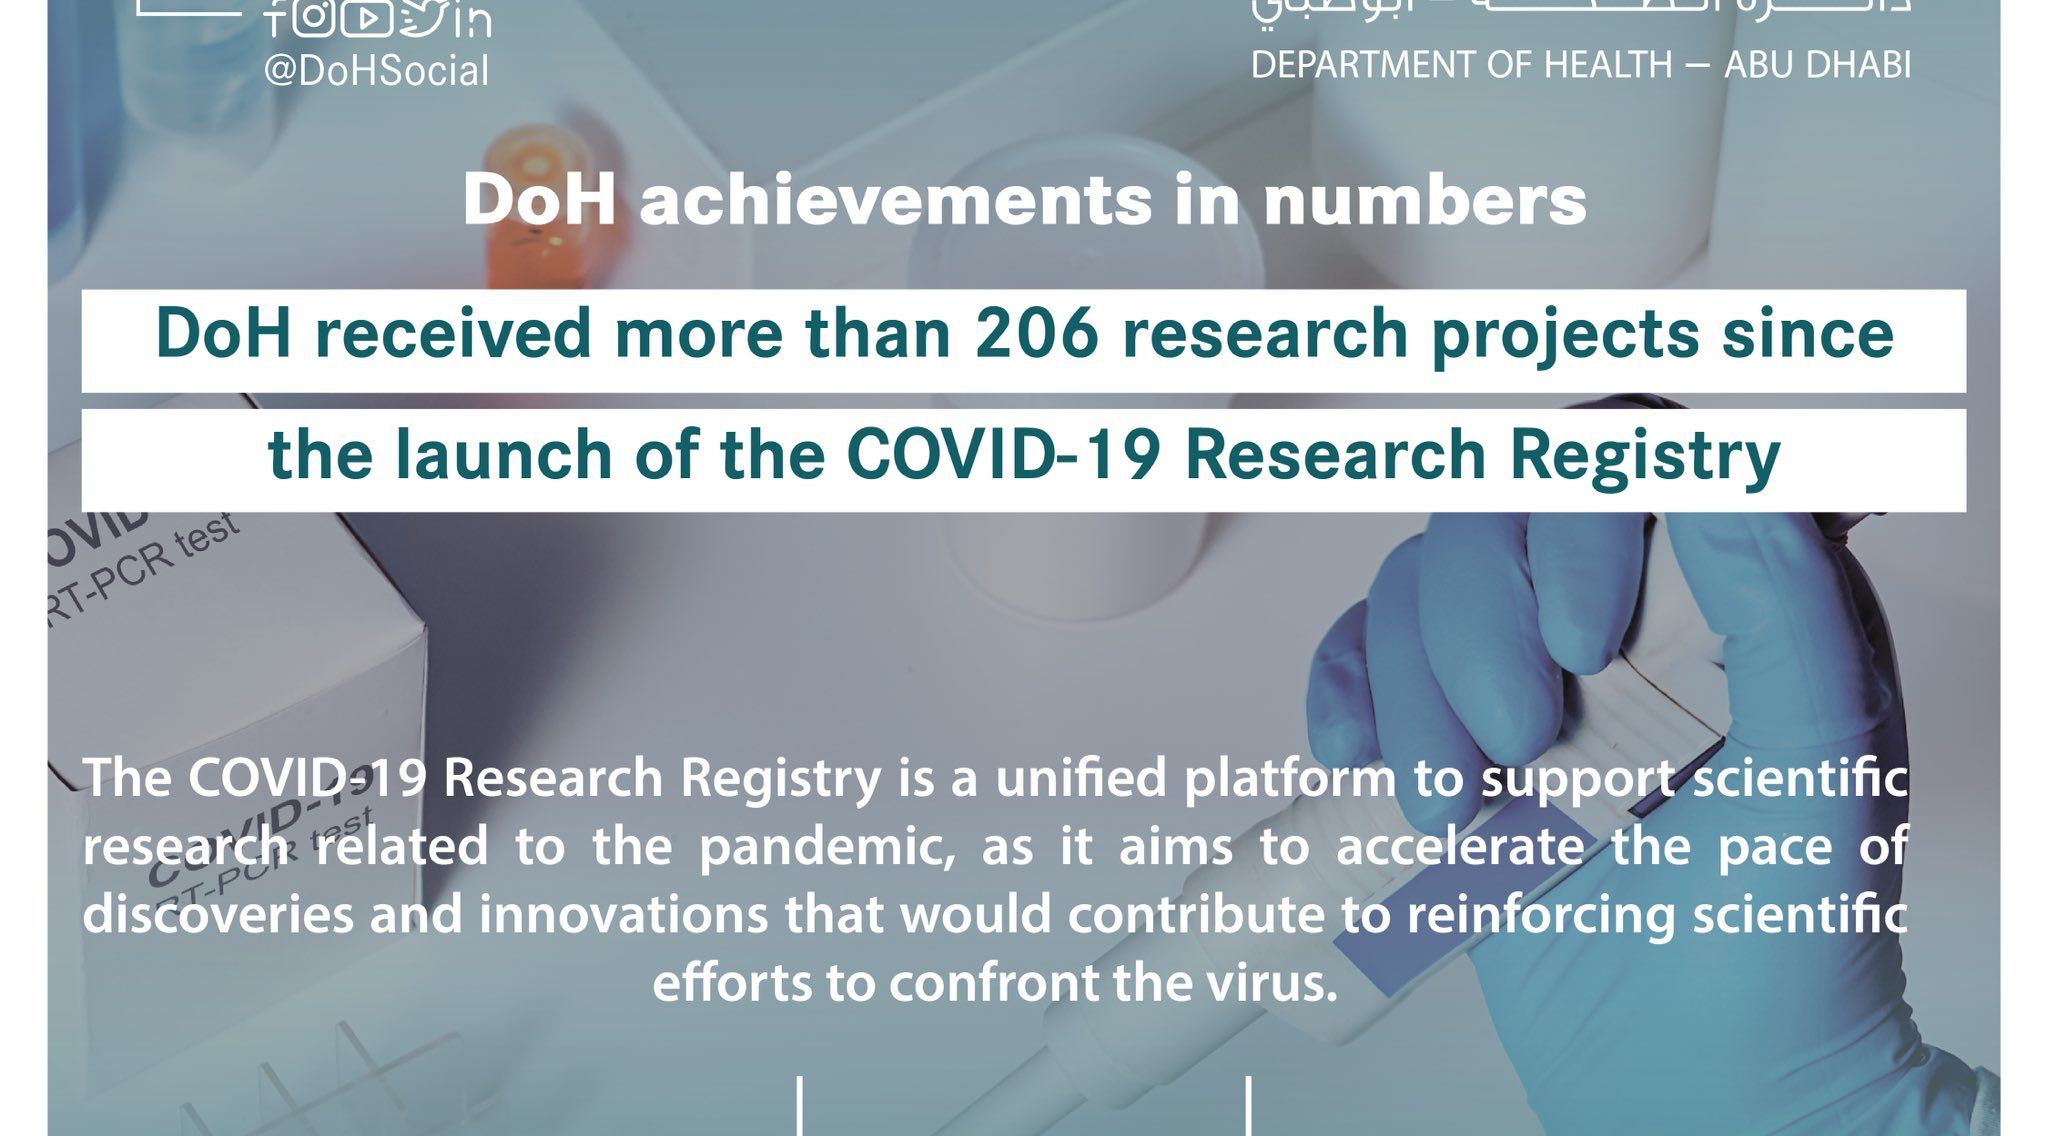 کوویڈ19 کے لئے ریسرچ رجسٹری کے آغاز کے بعد سے شعبہ صحت کو 206 سے زیادہ سائنسی تحقیقی منصوبے ملے